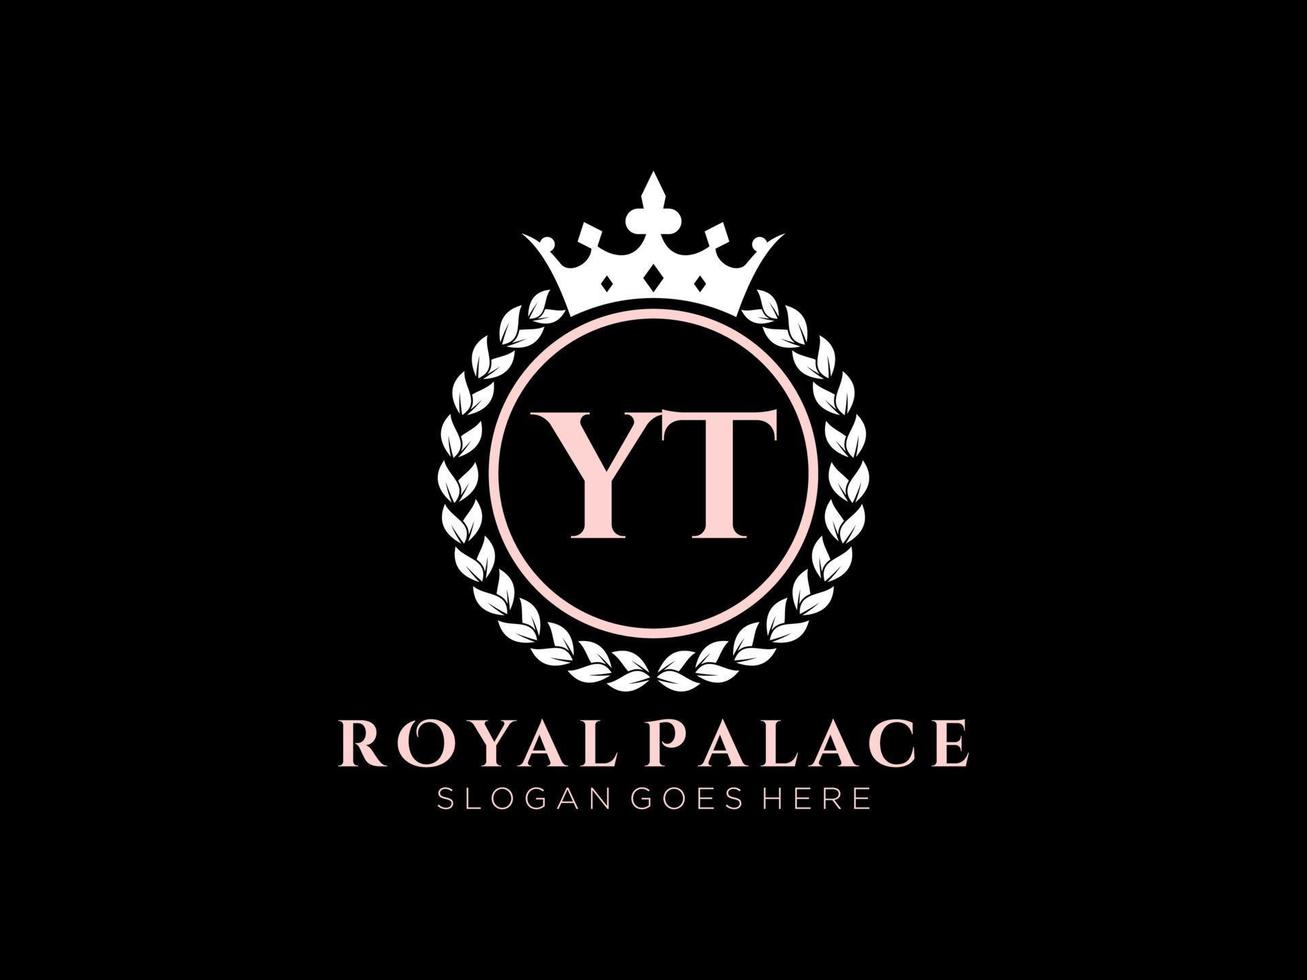 lettre yt logo victorien de luxe royal antique avec cadre ornemental. vecteur